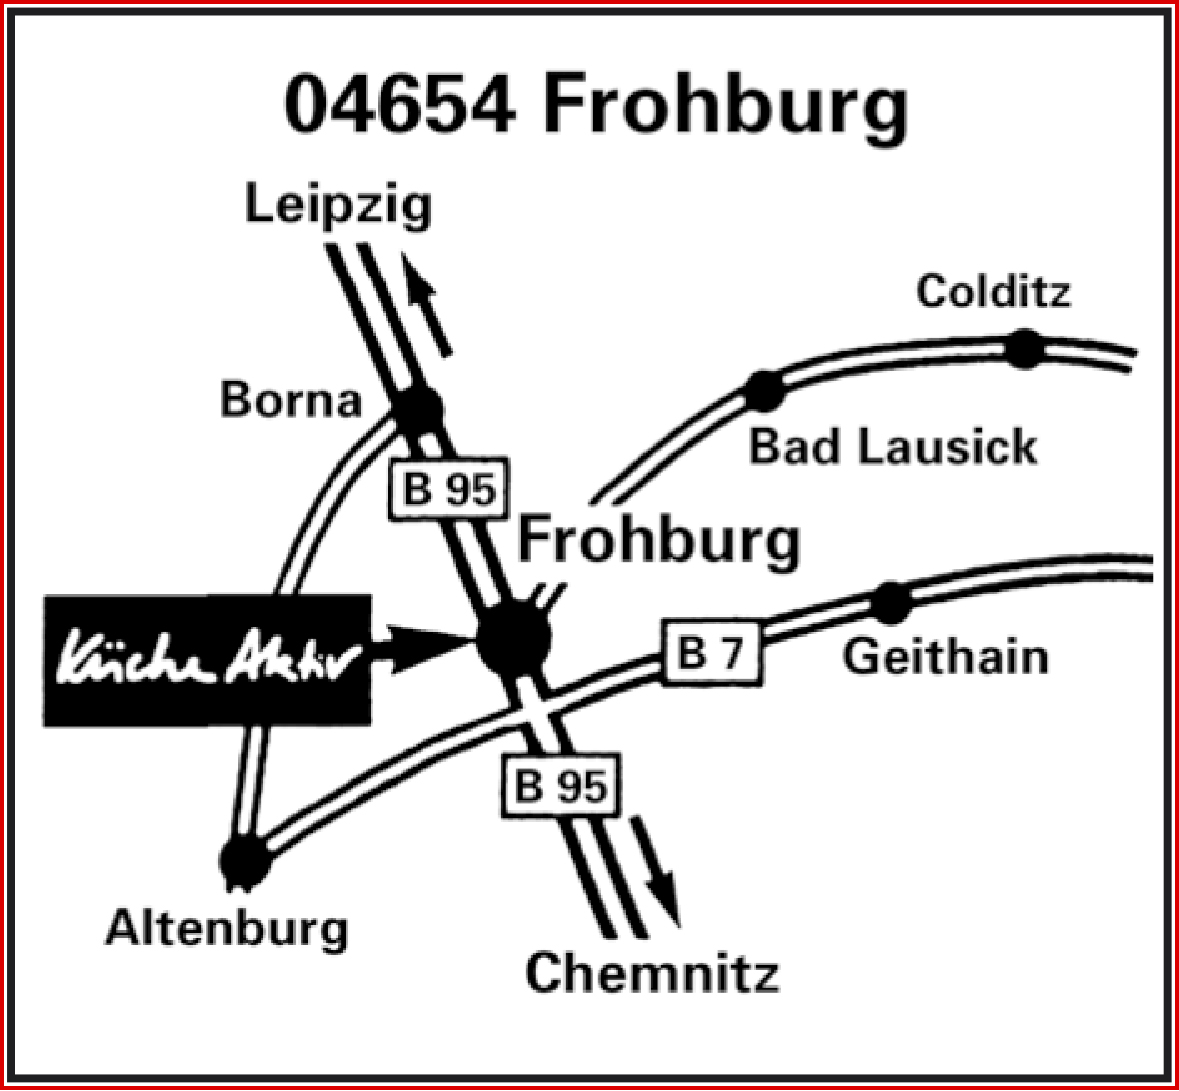 Das Bild zeigt den Küche Aktiv Standort in Frohburg